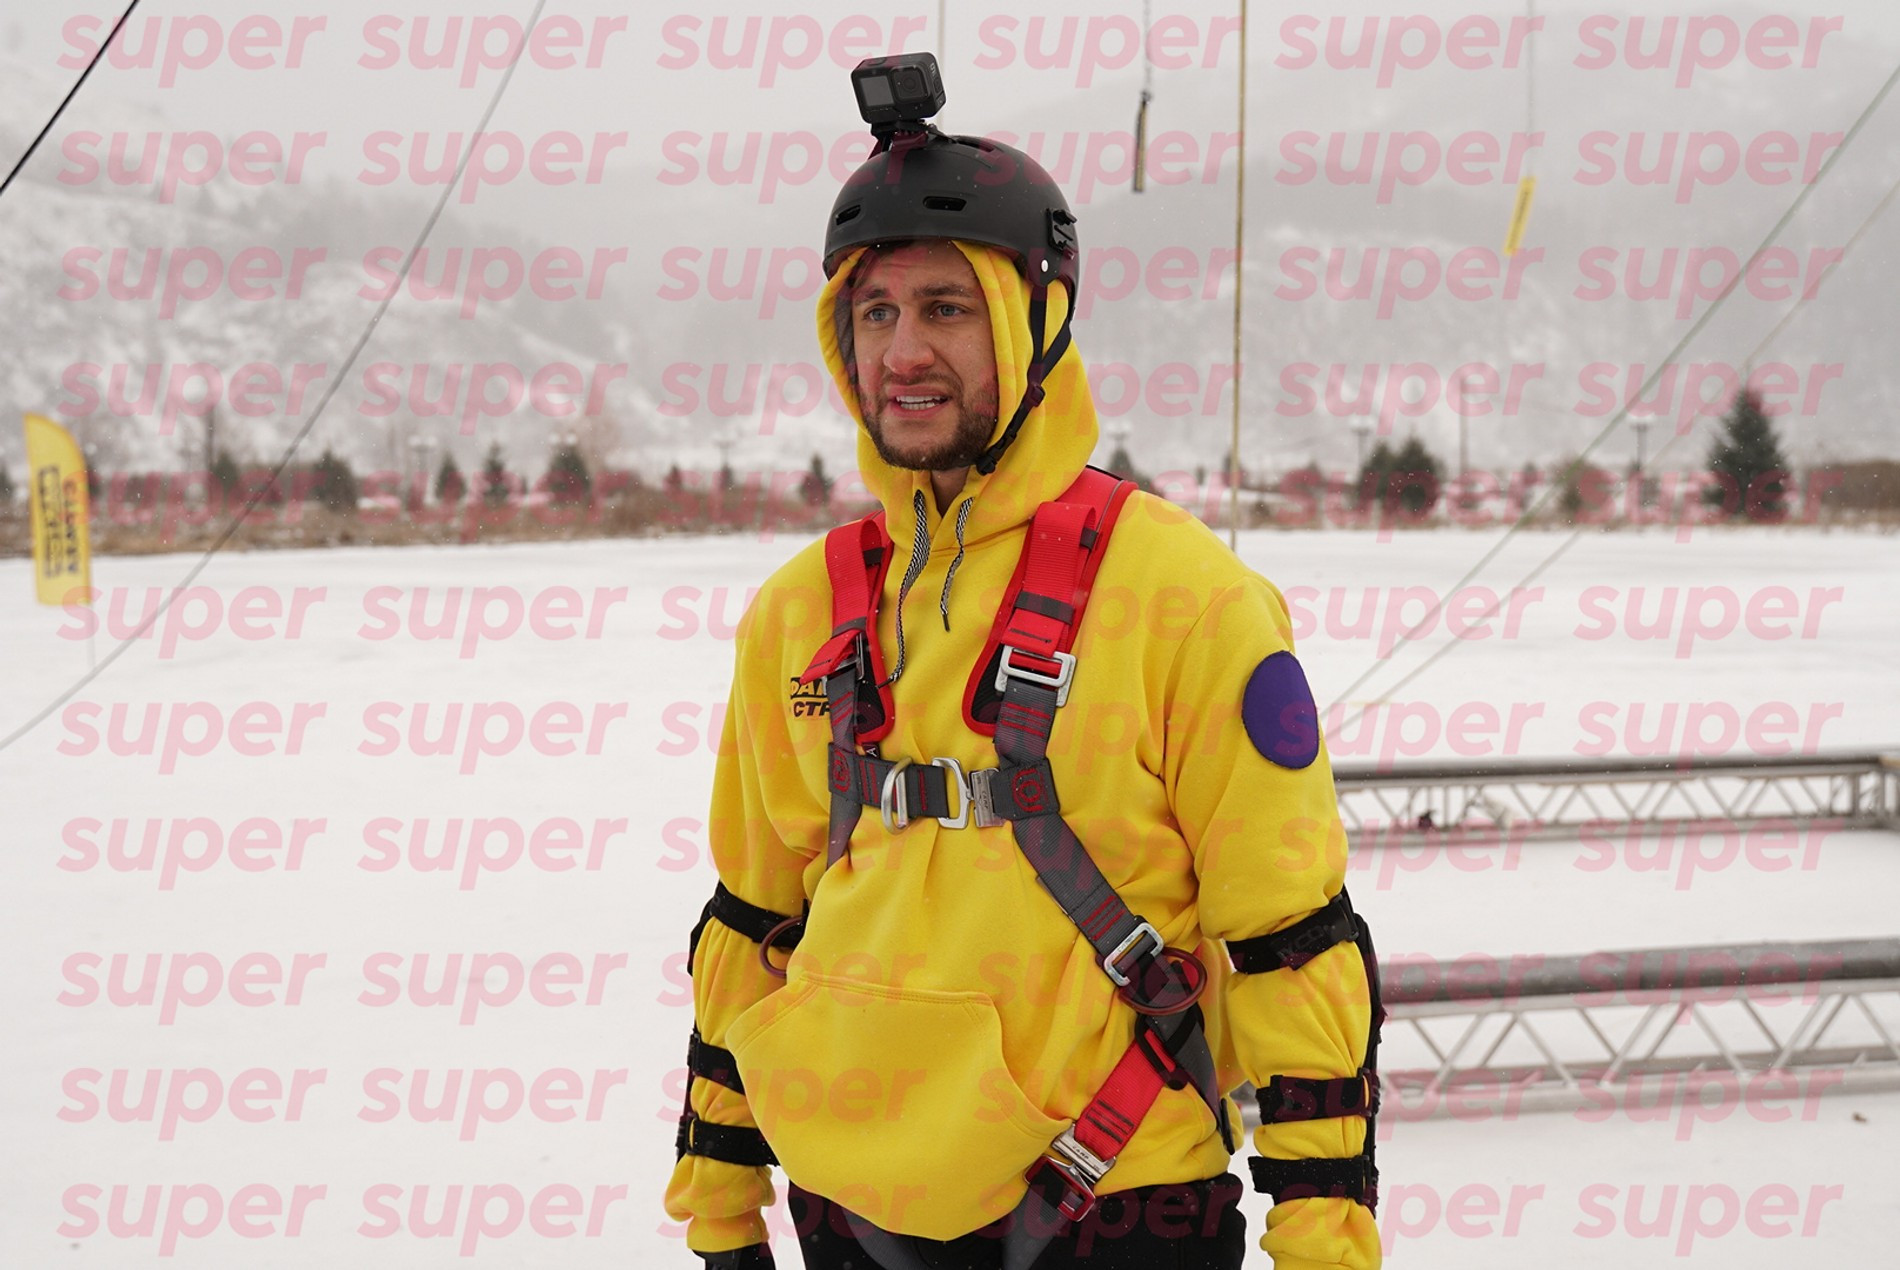 Давид Манукян на съемках шоу «Фактор страха»
Фото: Super 